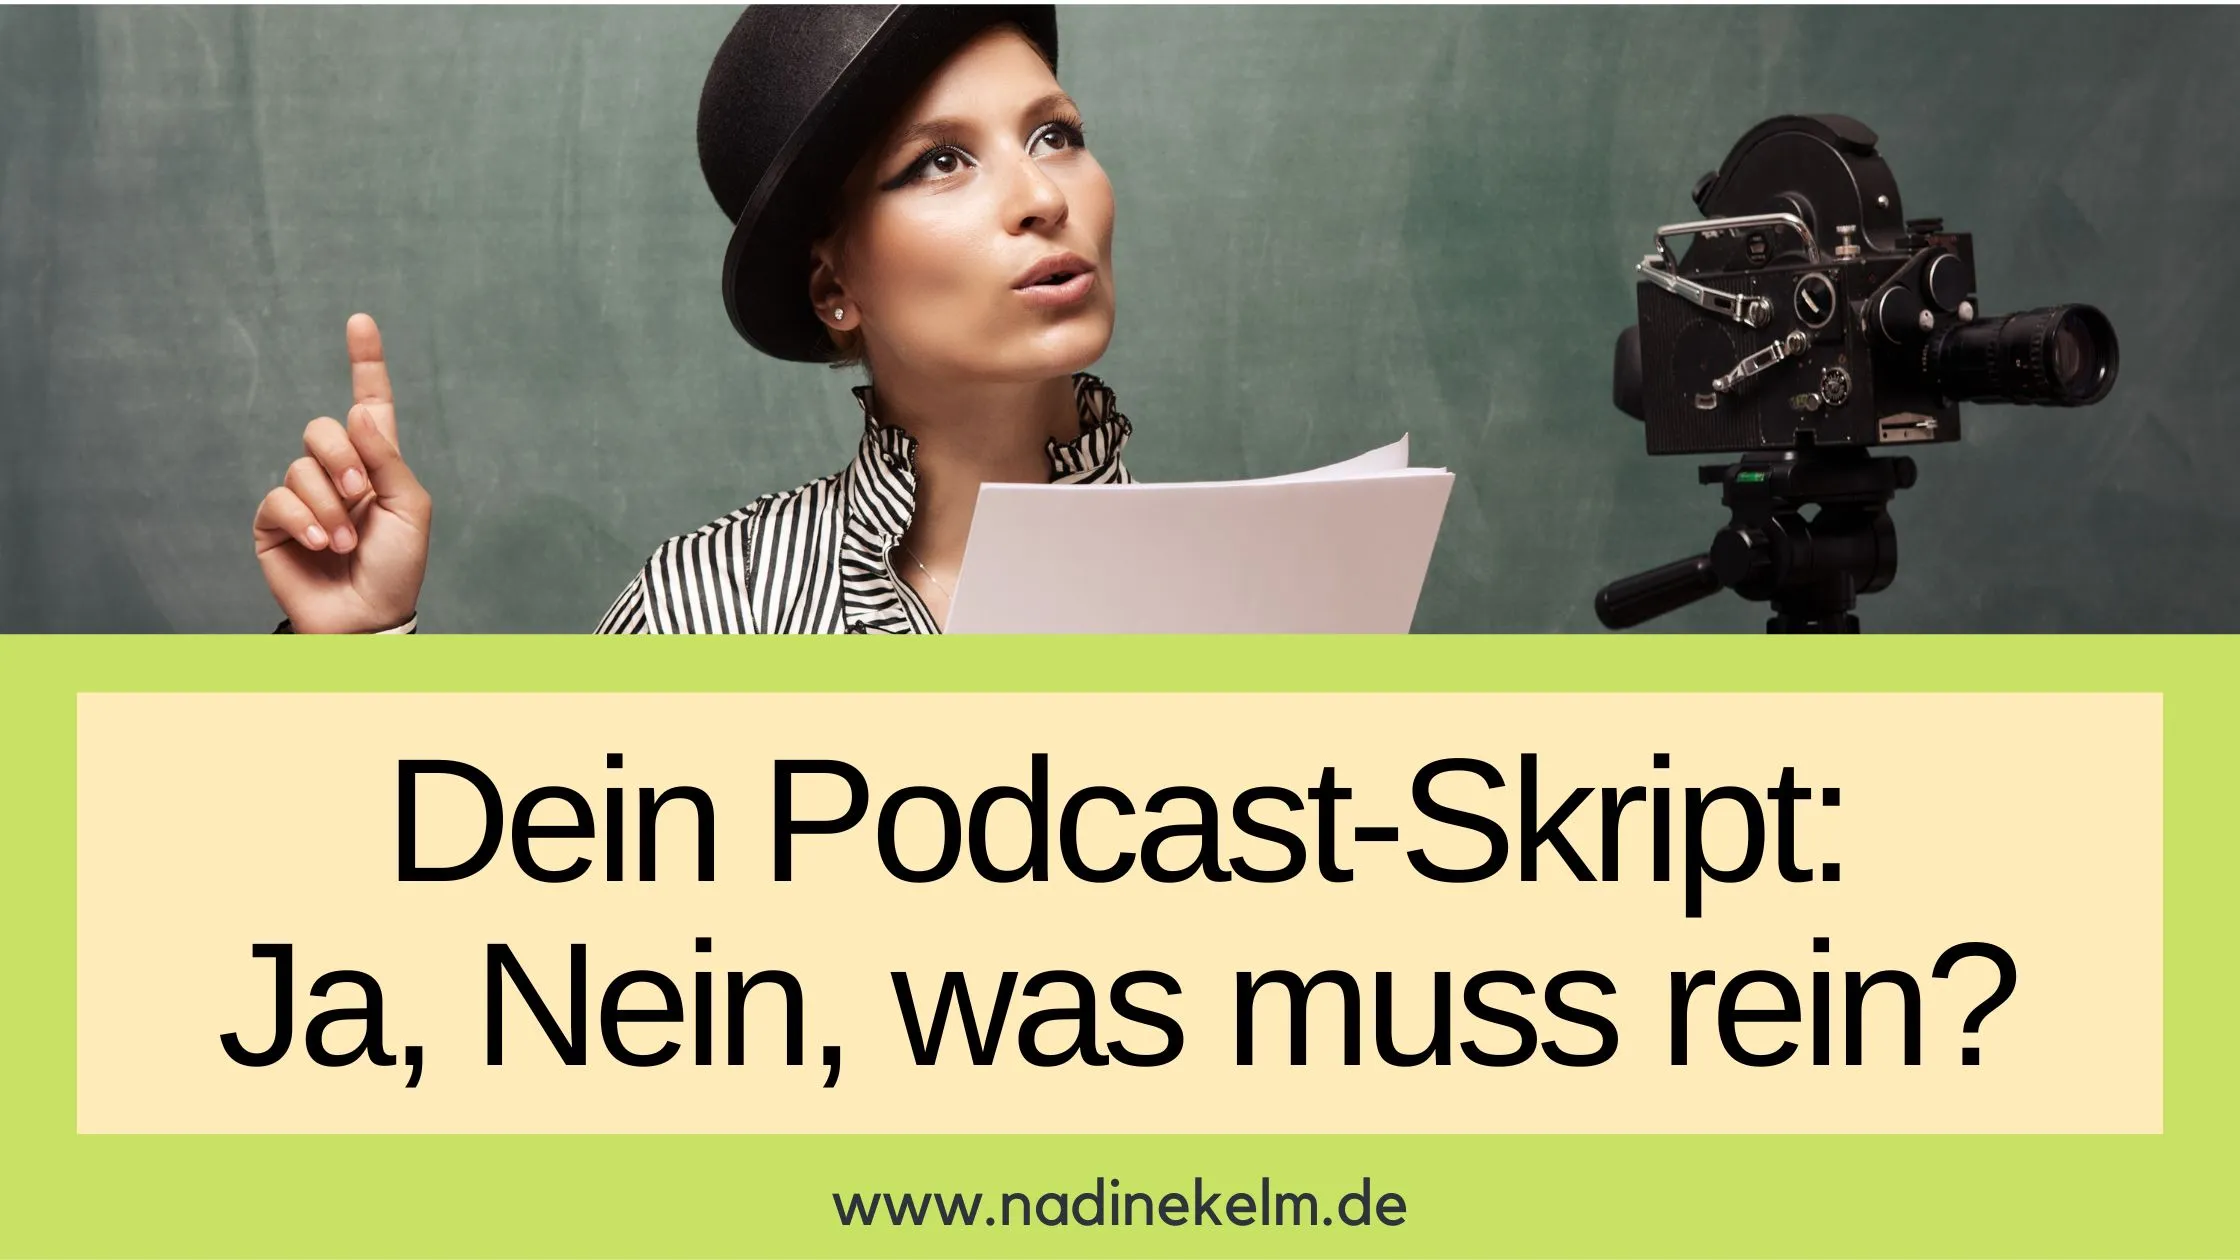 Podcast-Skript-Brauchst-du-eins-und-was-gehört-in-dein-Podcast-Skript-rein_